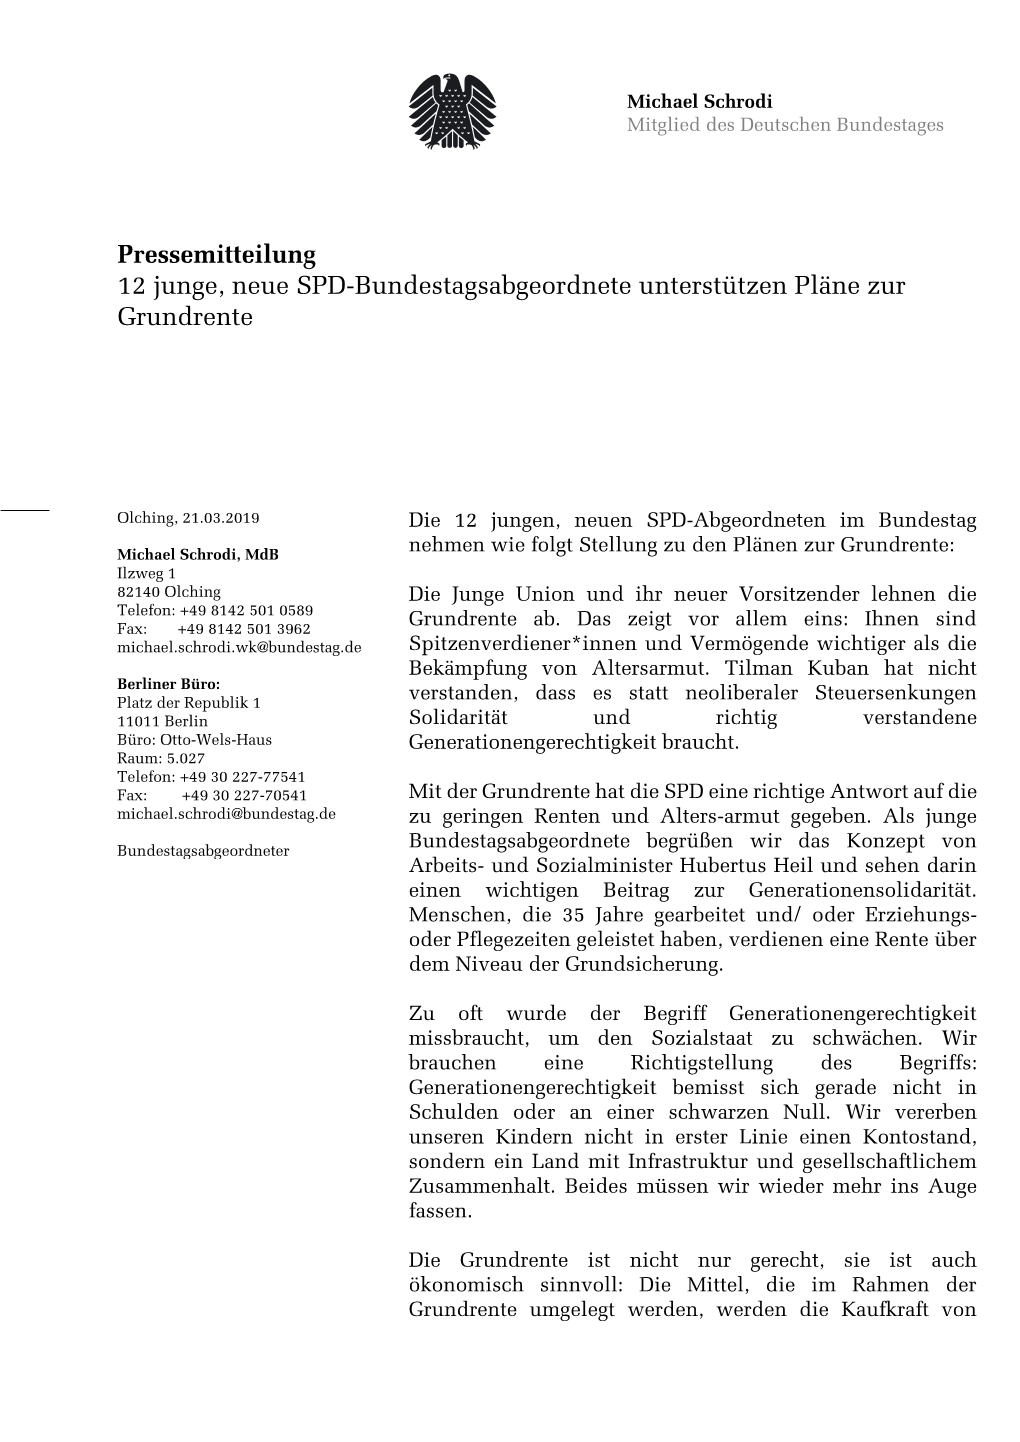 Pressemitteilung 12 Junge, Neue SPD-Bundestagsabgeordnete Unterstützen Pläne Zur Grundrente